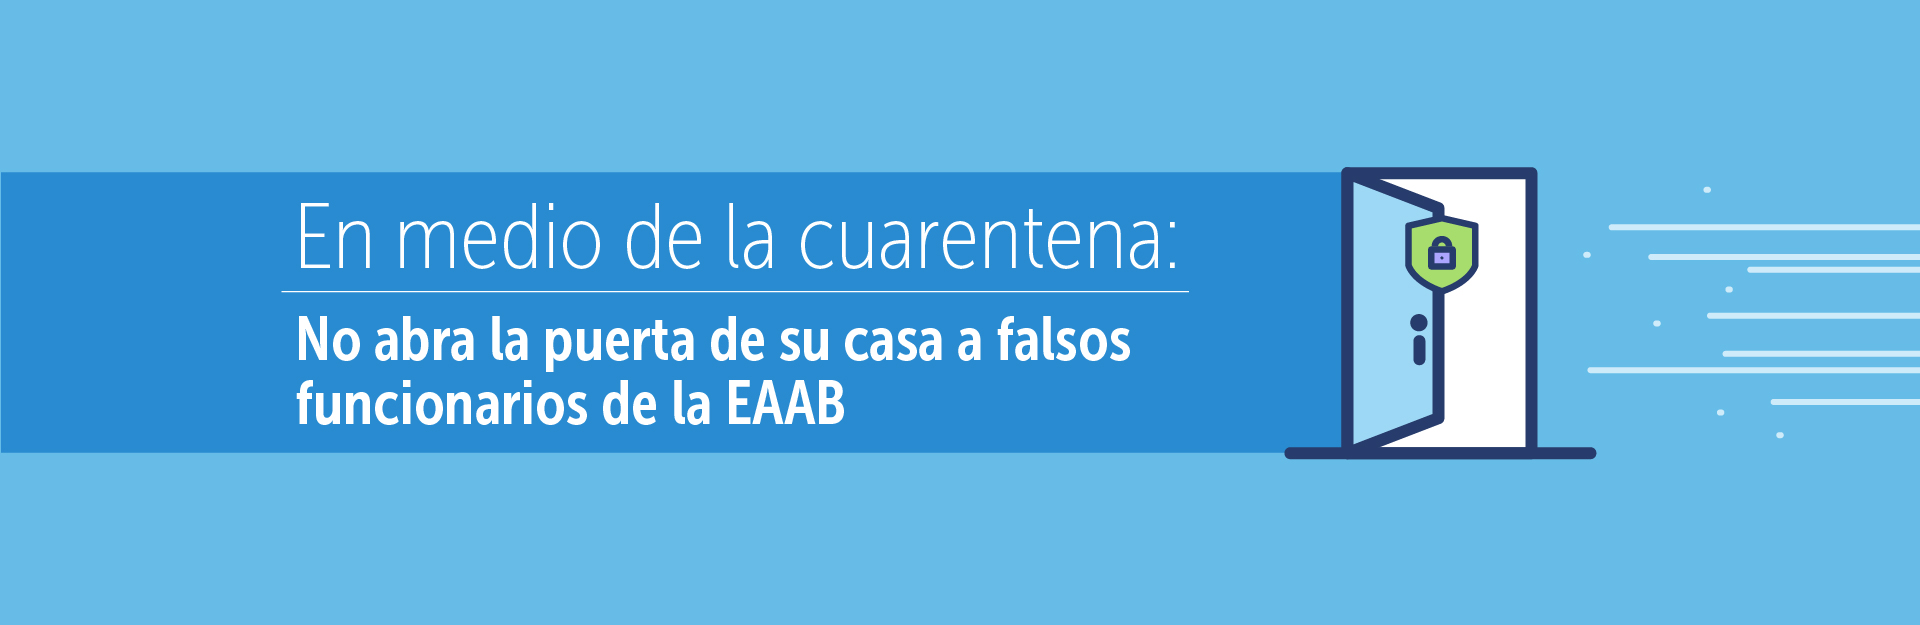 En medio de la cuarentena: No abra la puerta de su casa a falsos funcionarios de la EAAB